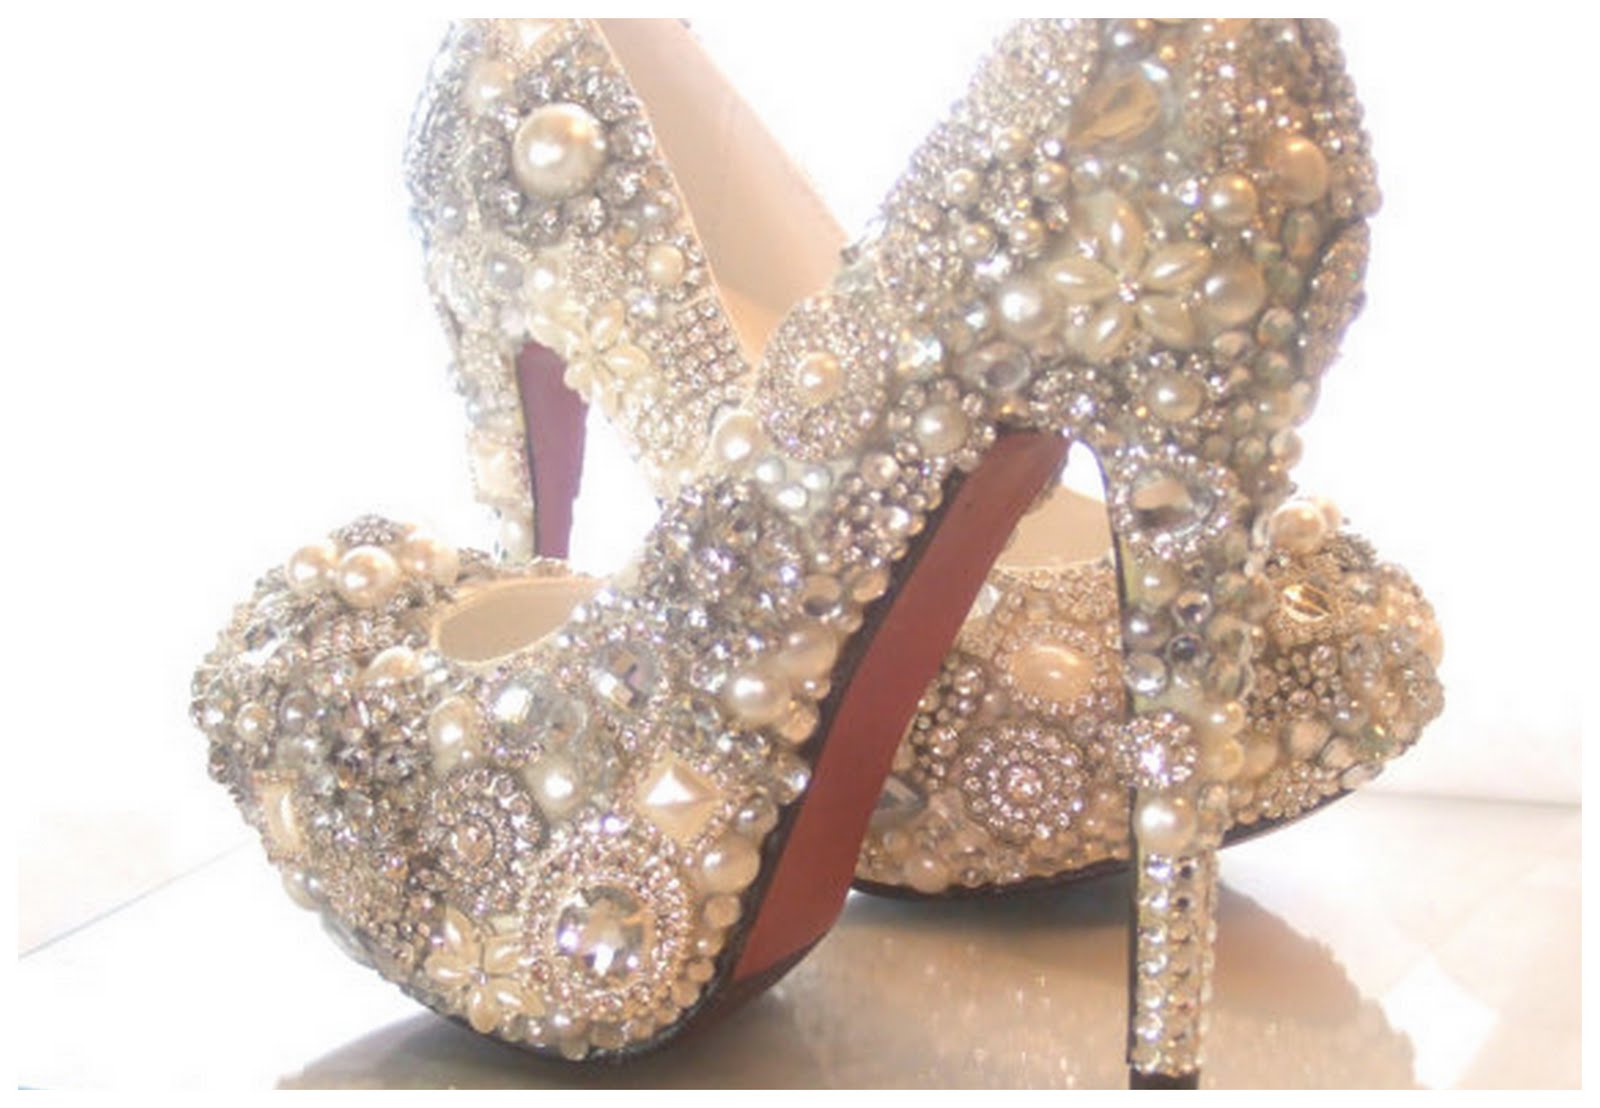 Cinderella's Shoe - Chicago Wedding Blog